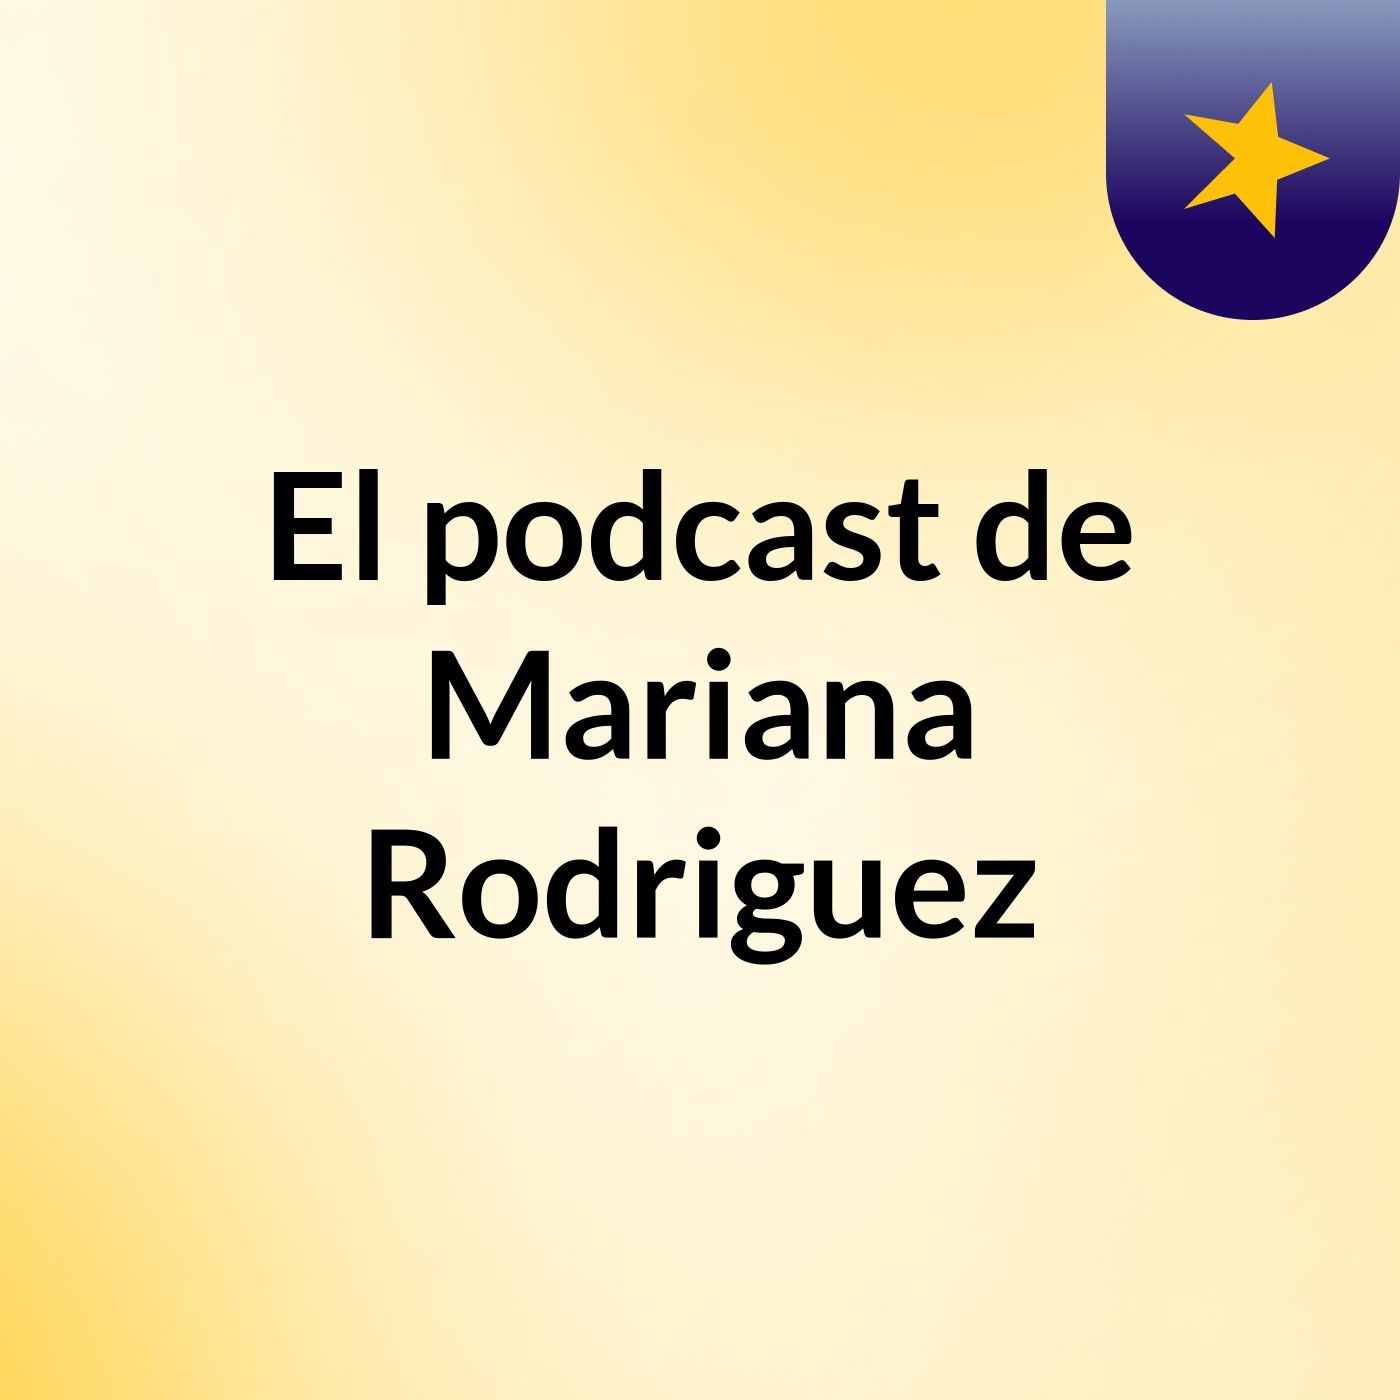 El podcast de Mariana Rodriguez